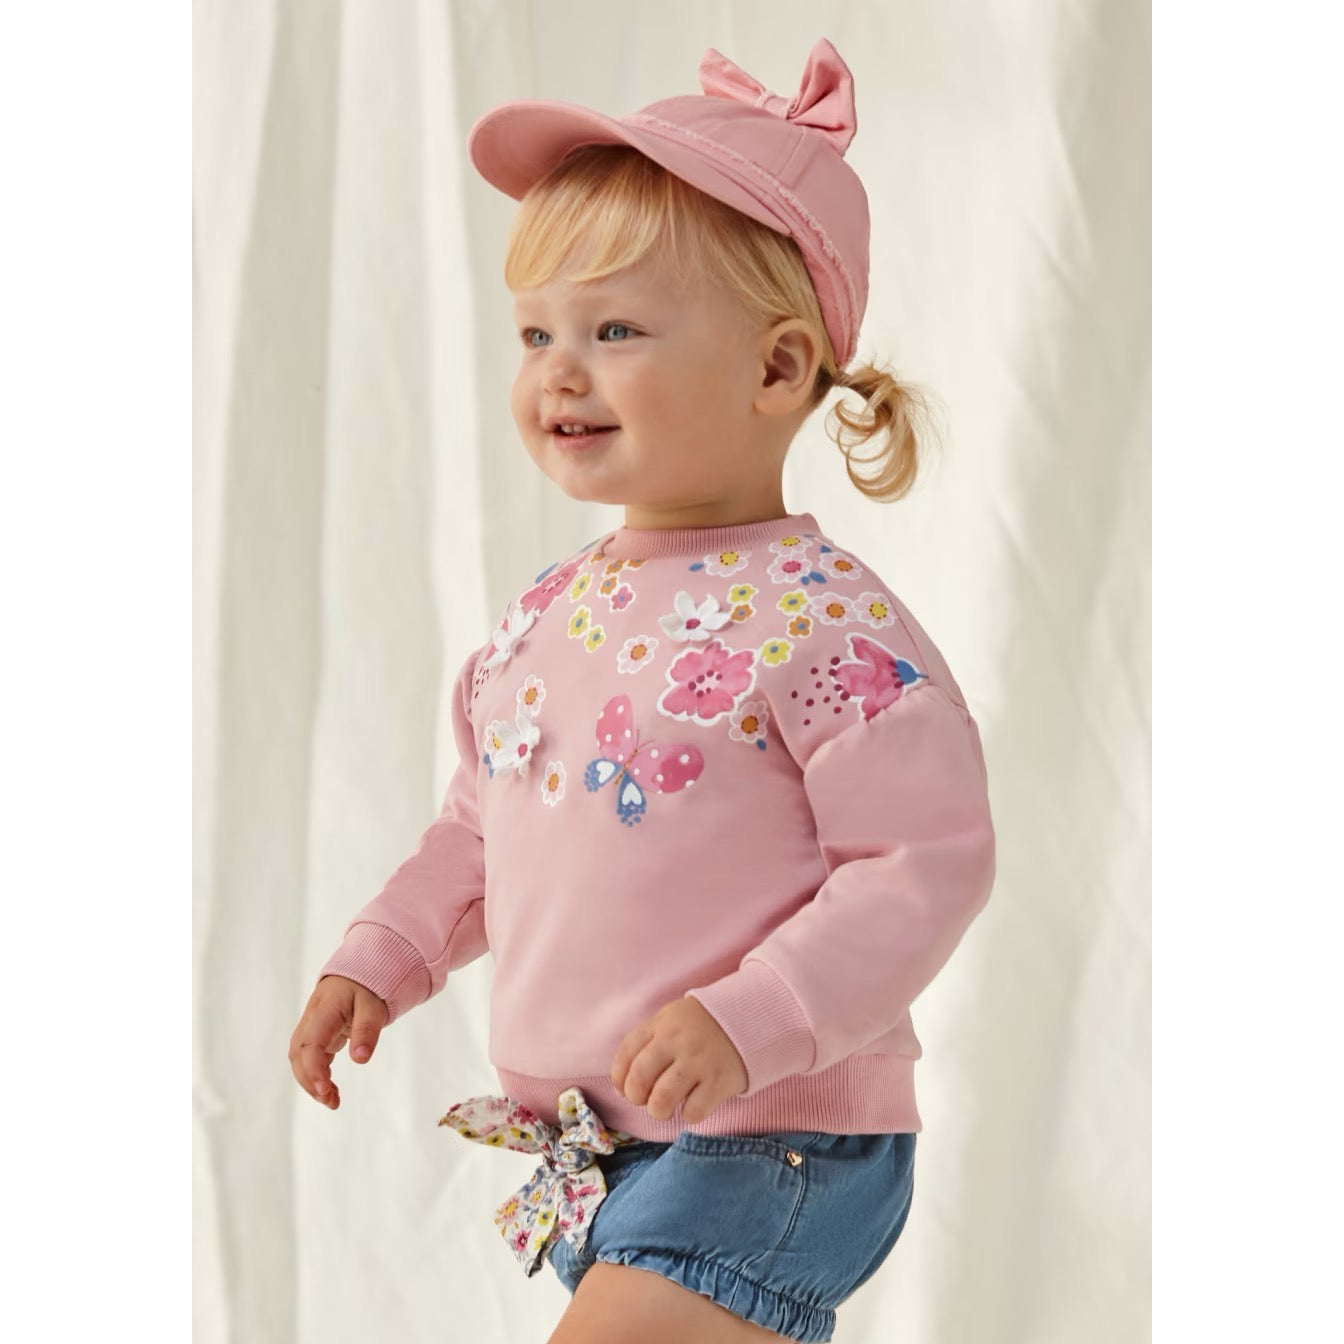 Mayoral Infant Girls Floral Sweatshirt 1432 Clothing 6M / Pink,9M / Pink,12M / Pink,18M / Pink,24M / Pink